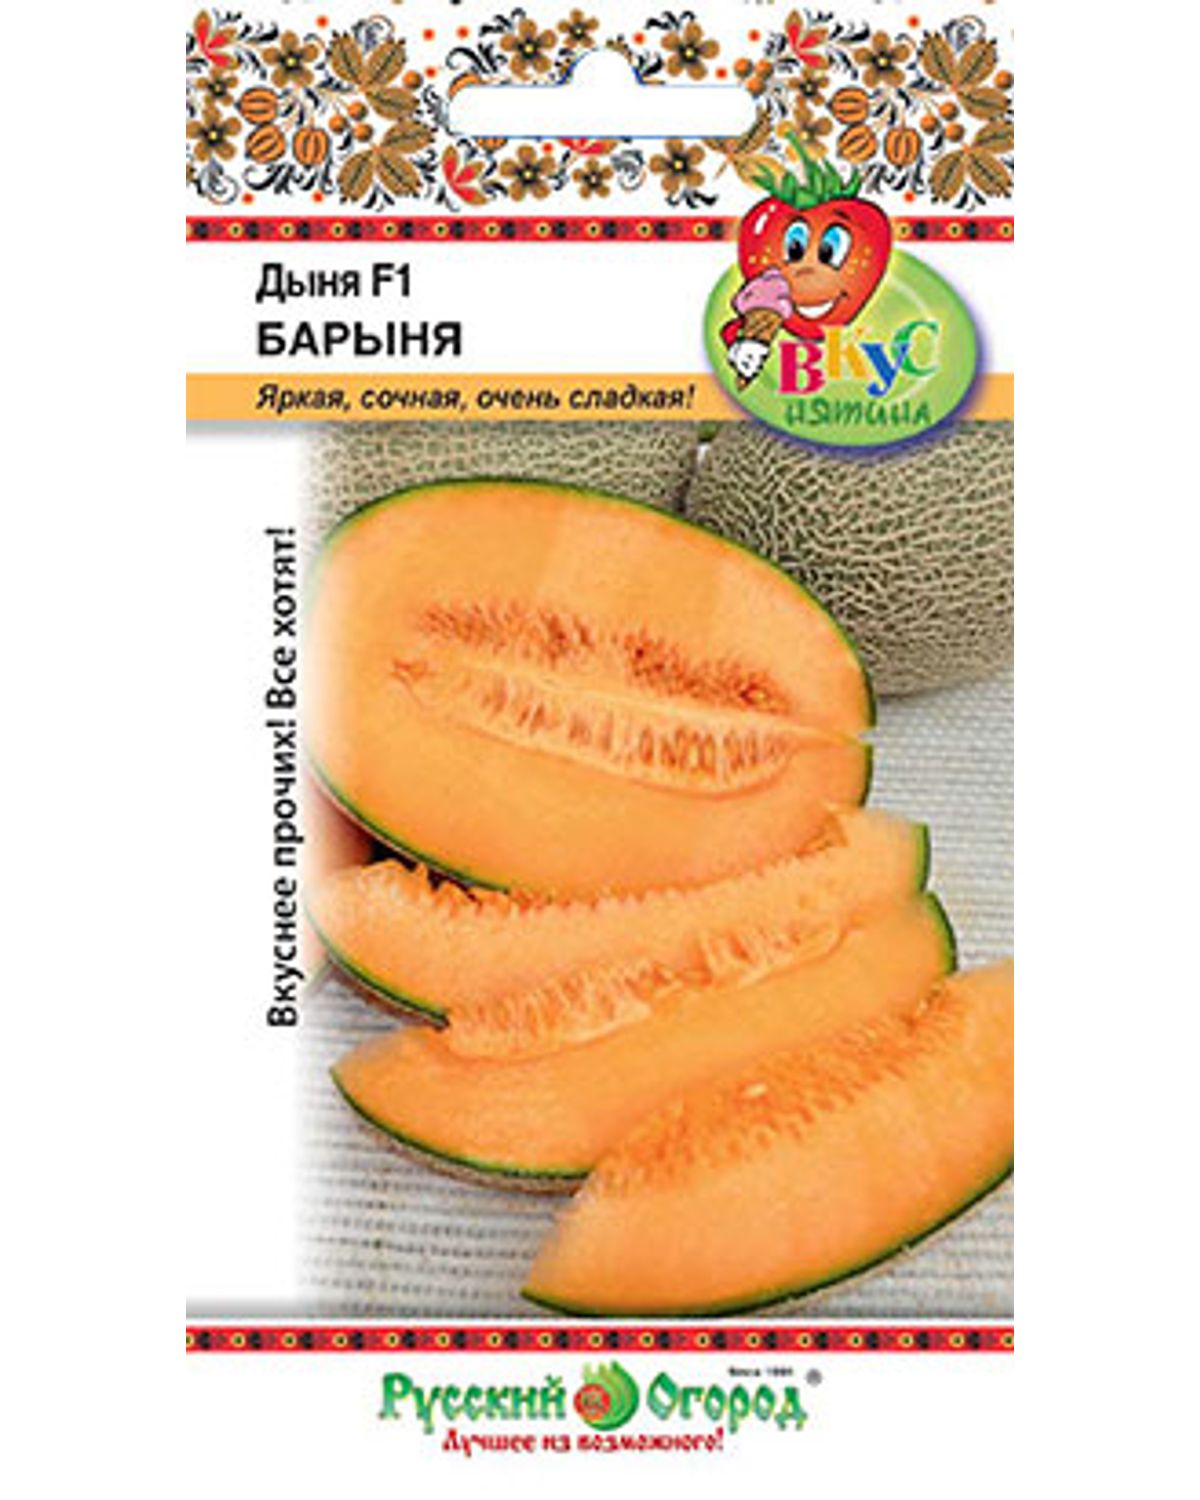 Семена овощей Русский огород 304314 Дыня F1 Барыня 5 шт.